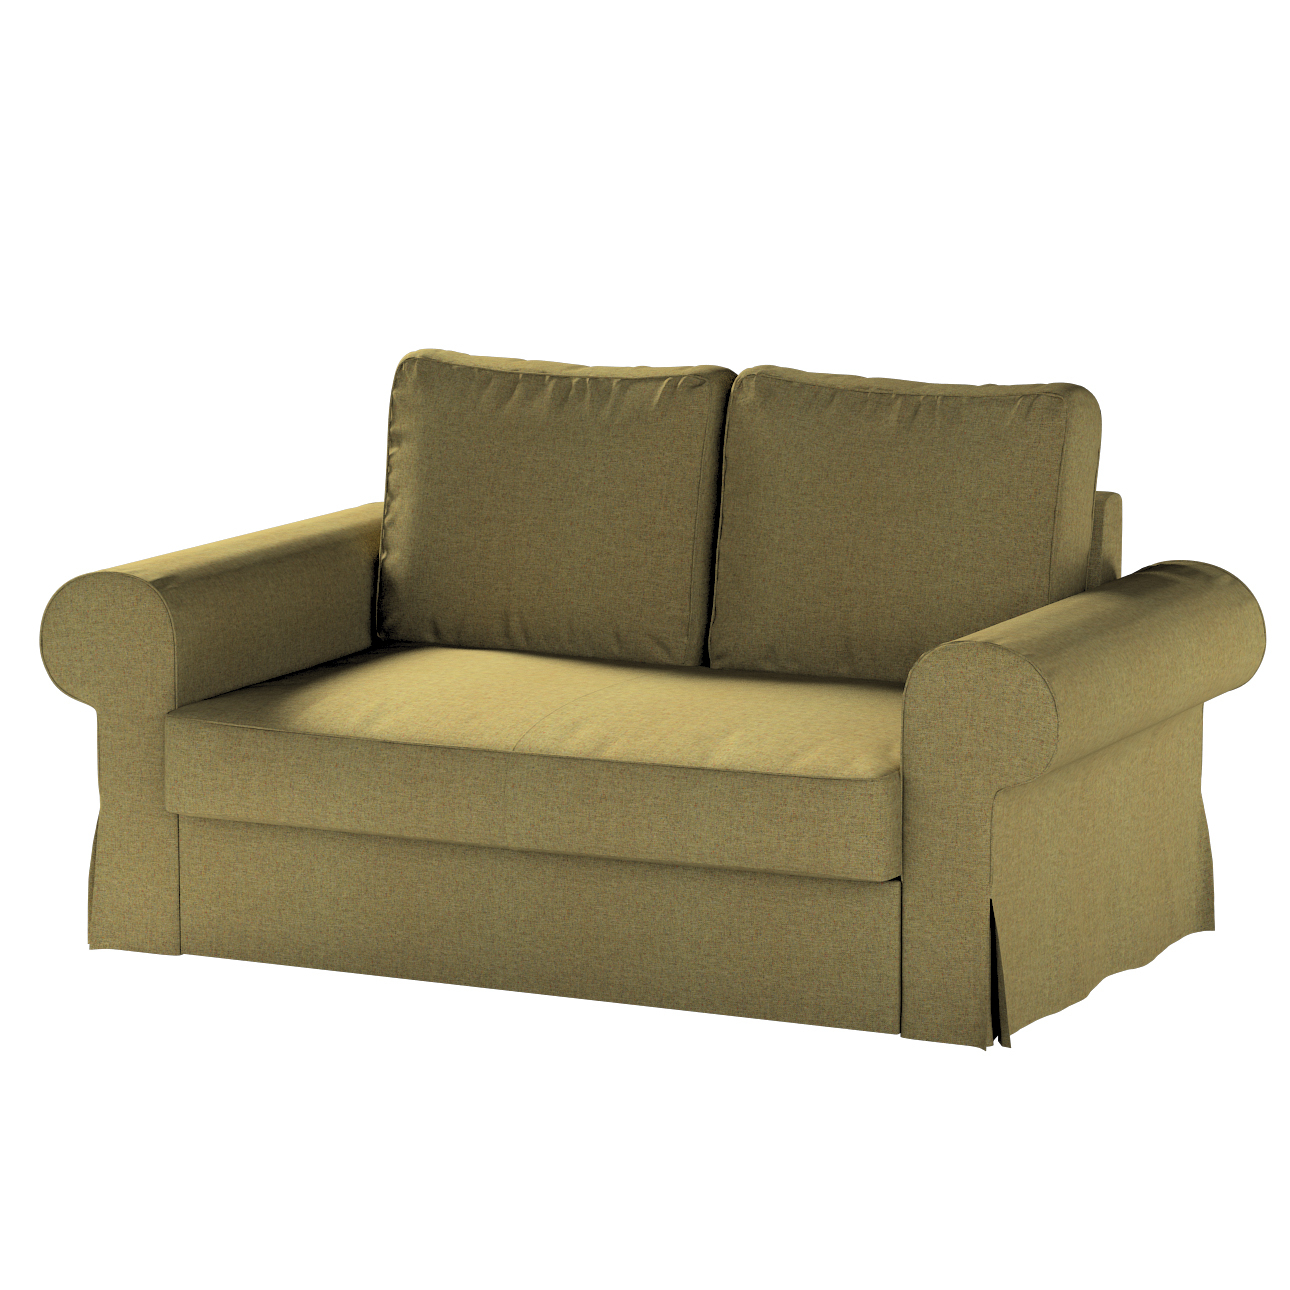 Bezug für Backabro 2-Sitzer Sofa ausklappbar, olivgrün, Bezug für Backabro günstig online kaufen